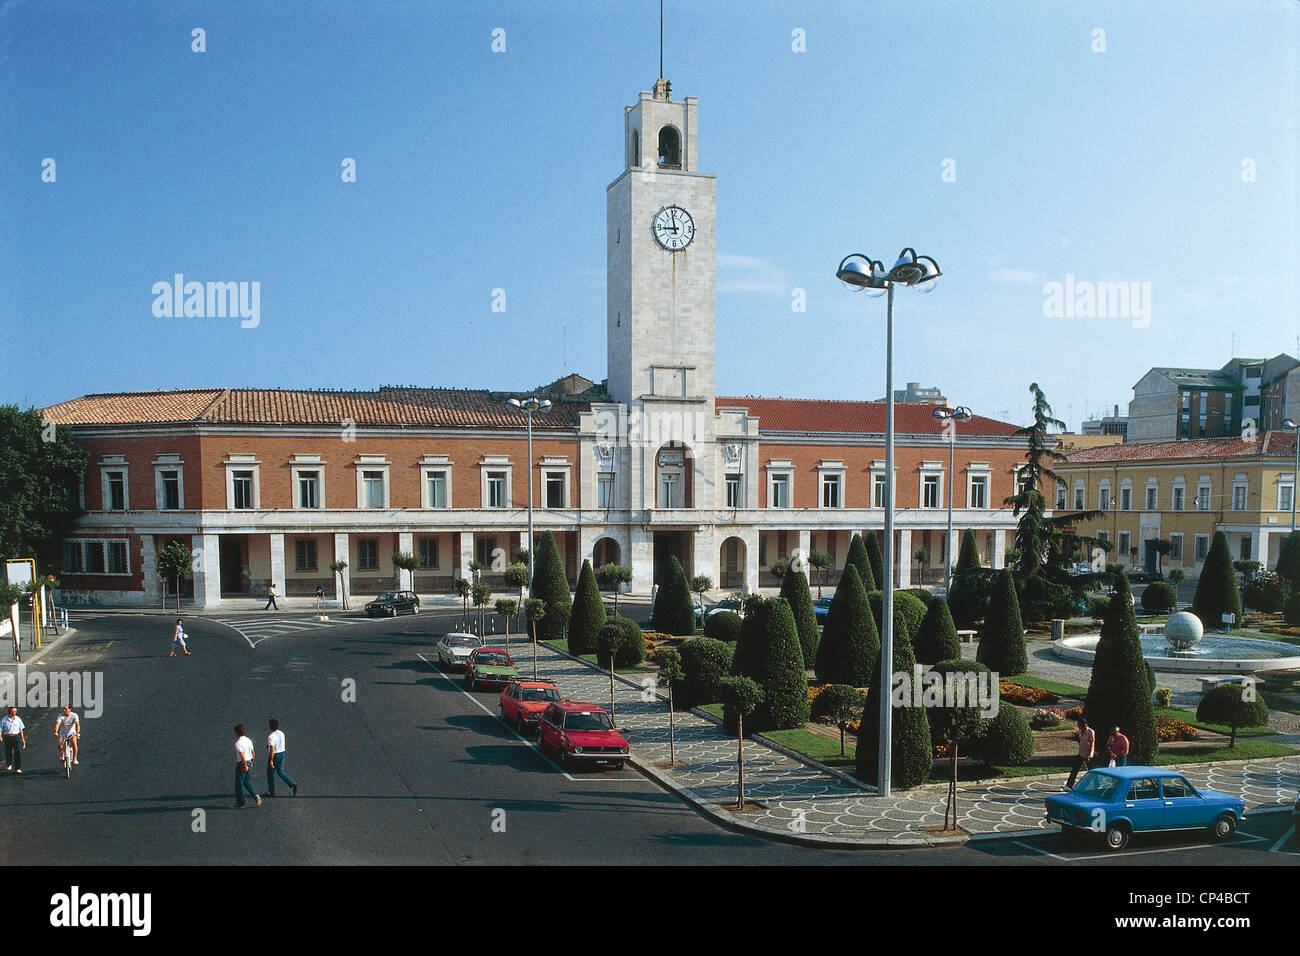 Lazio Rom - Latina. Rathaus mit dem bürgerlichen Turm mit der Uhr Stockfoto